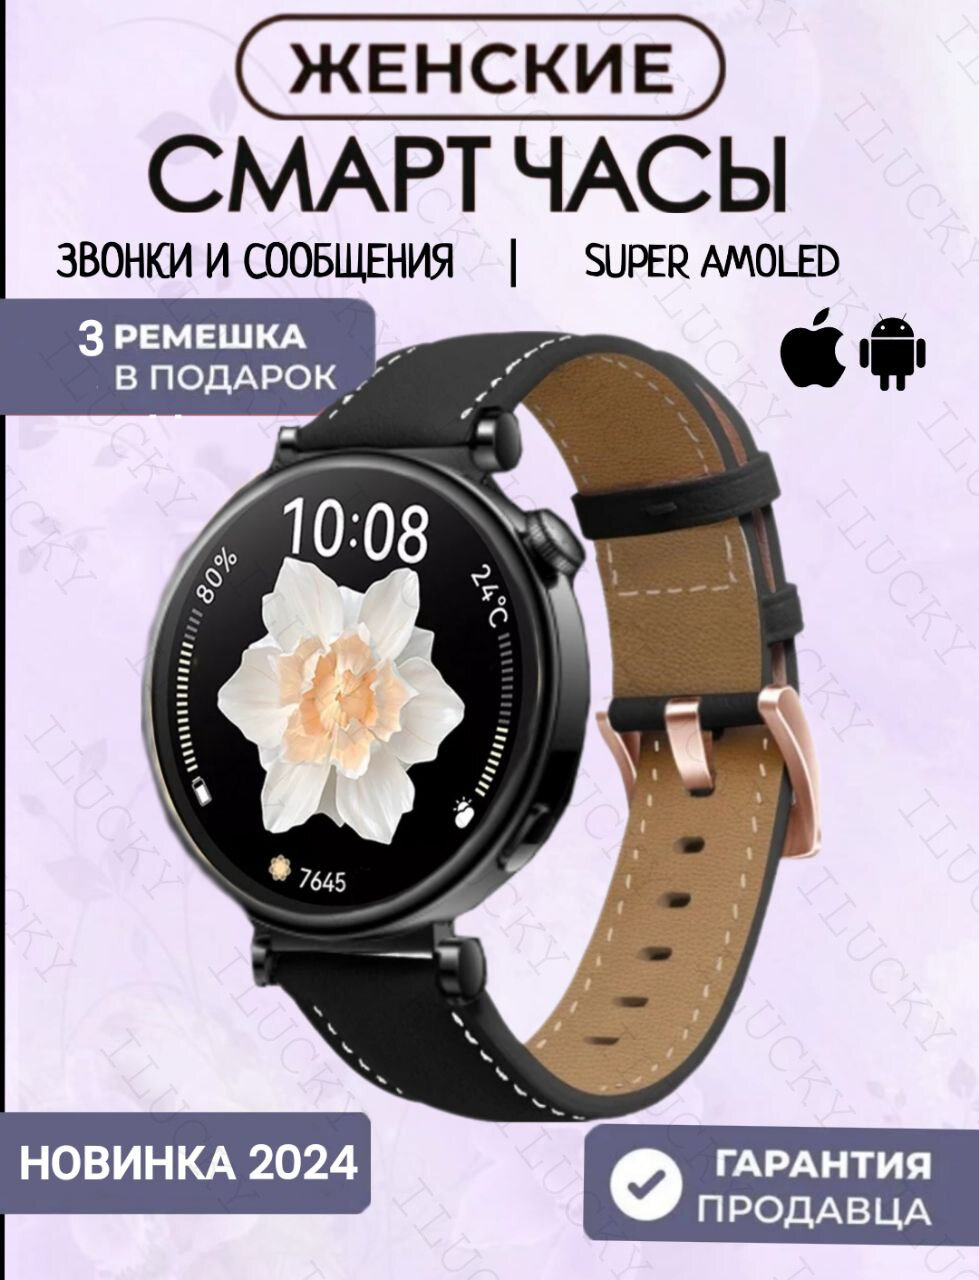 Смарт часы женские круглые smаrt wаtch / умные часы наручные с функцией звонка / смарт-часы черные / 3 ремешка в комплекте